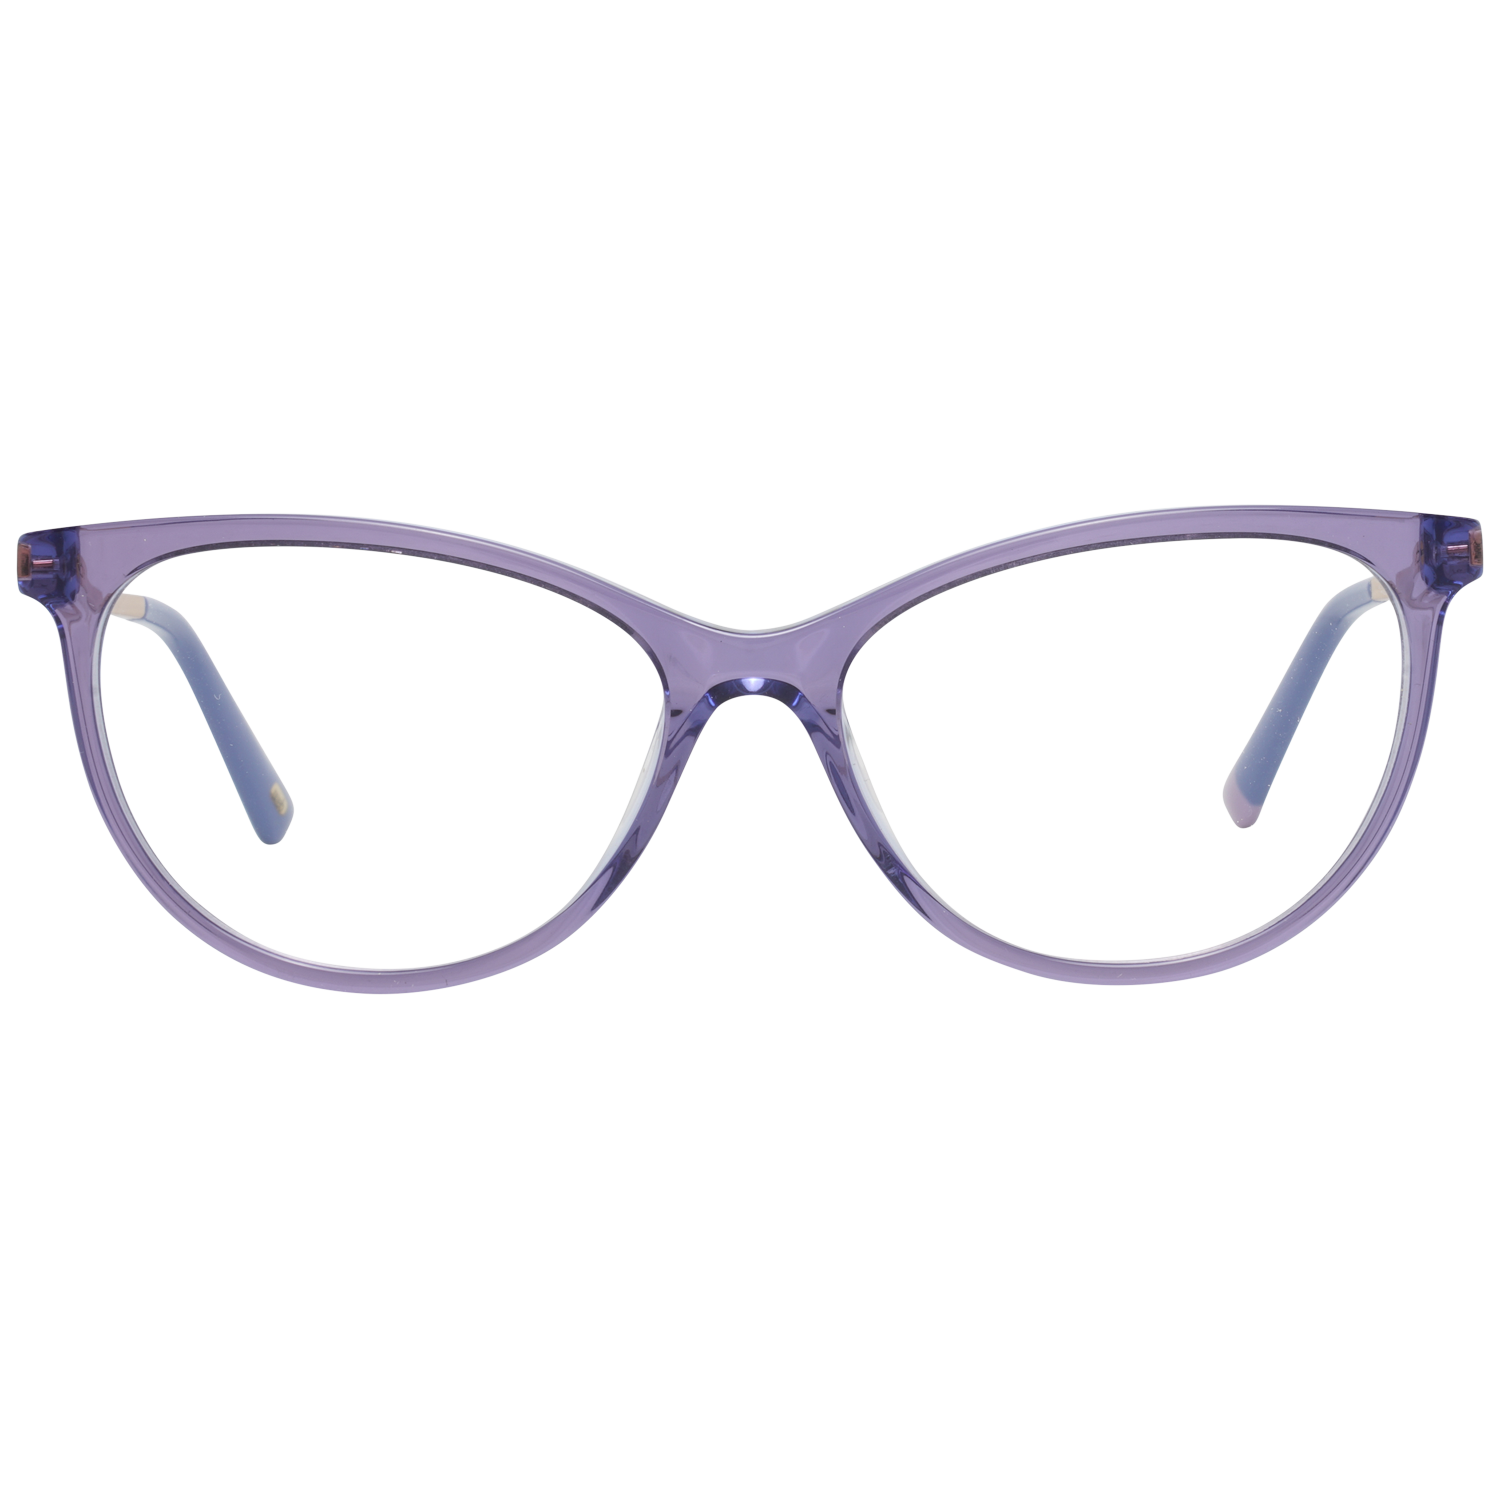 Web Frames Web Optical Frame WE5239 080 54 Eyeglasses Eyewear UK USA Australia 